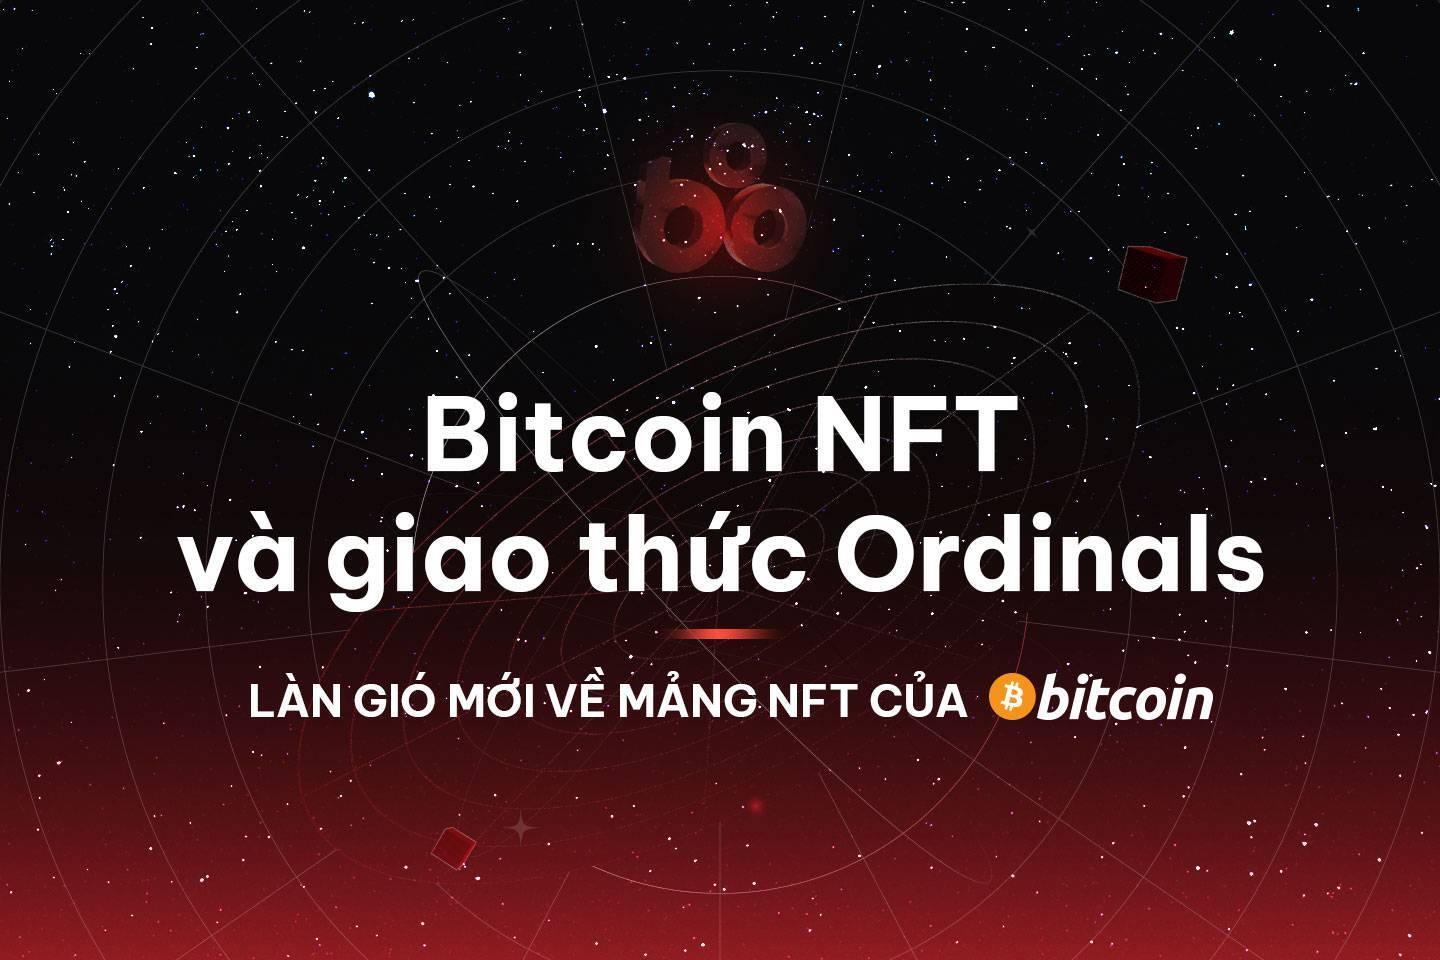 bitcoin-nft-va-giao-thuc-ordinals-lan-gio-moi-ve-mang-nft-cua-bitcoin